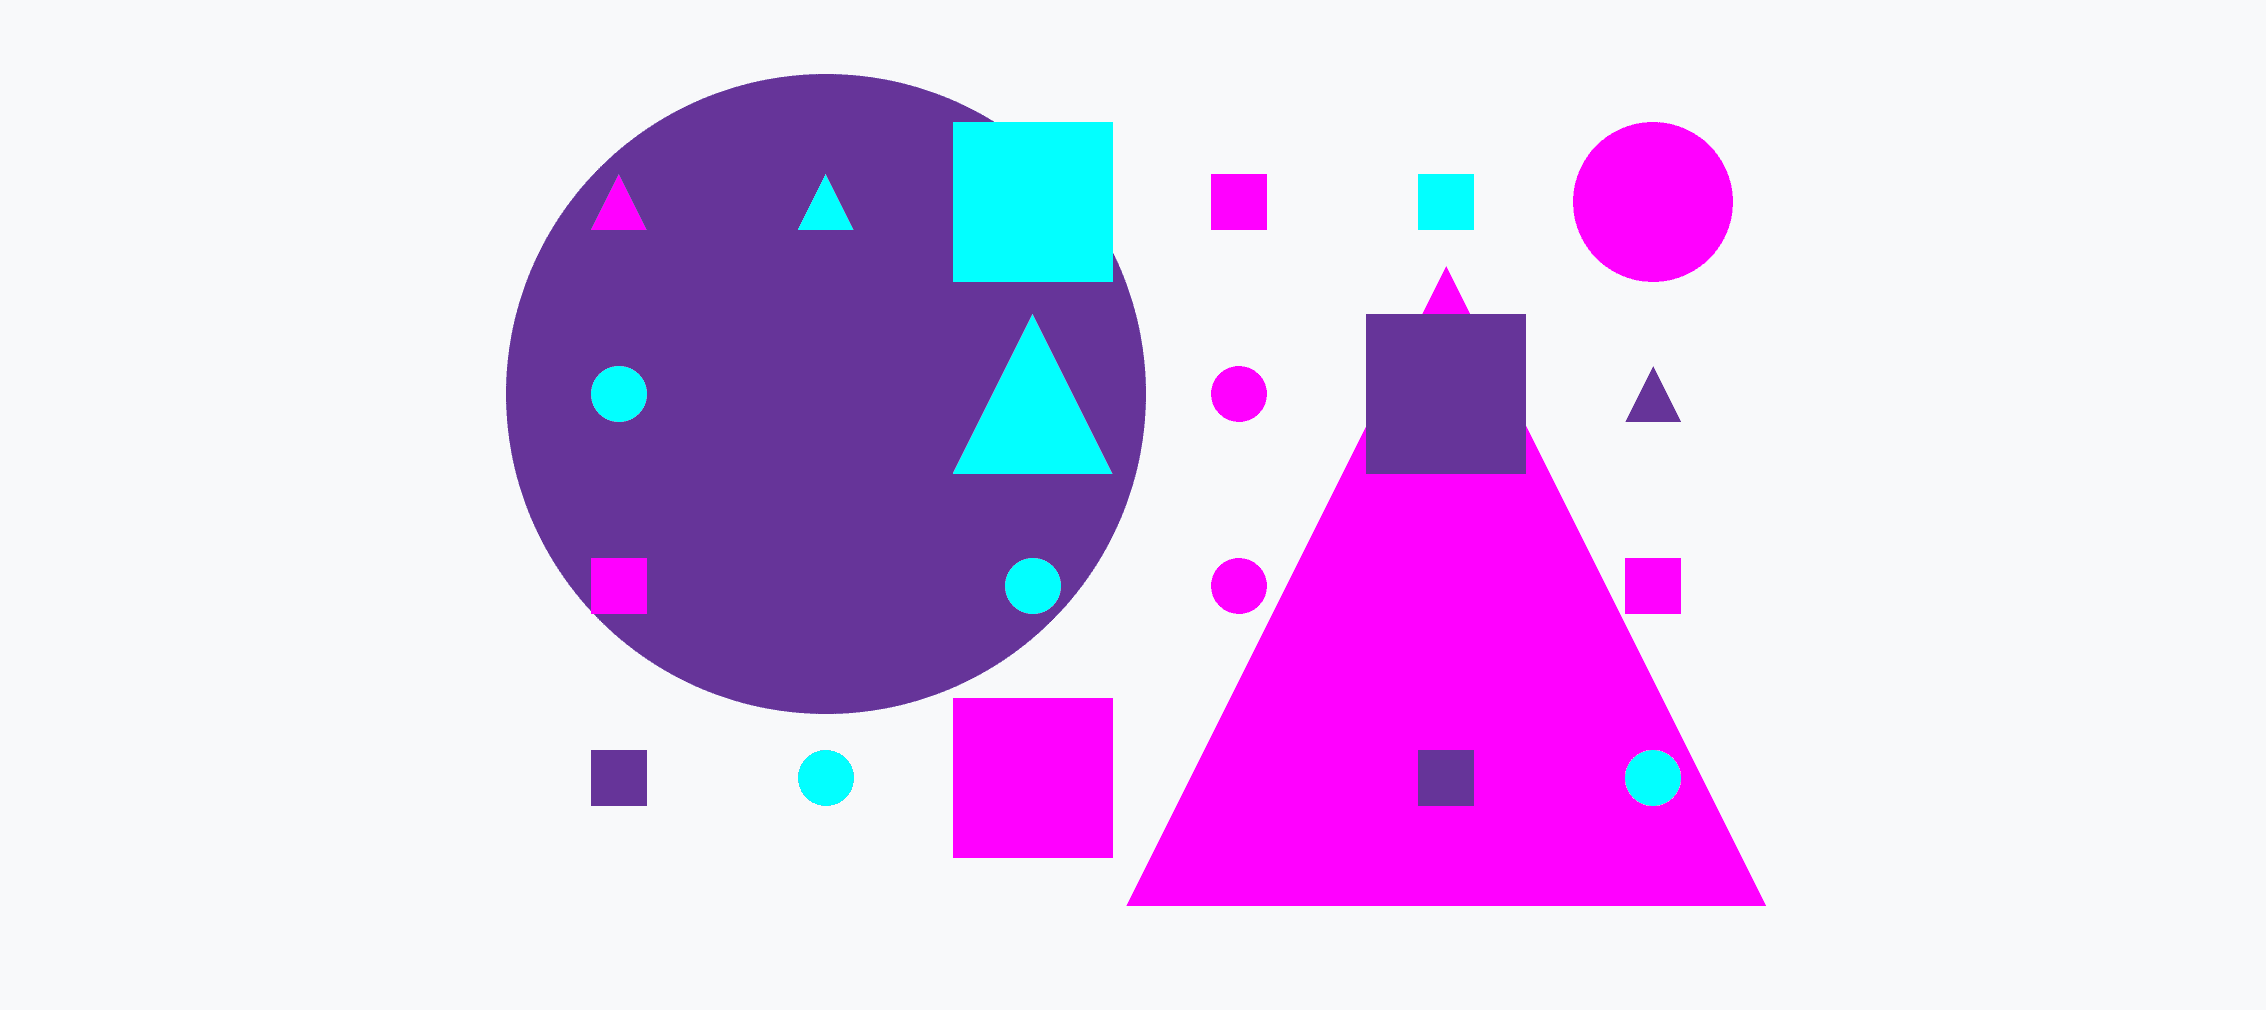 Красочная сетка из маленьких и больших кругов, треугольников и квадратов.